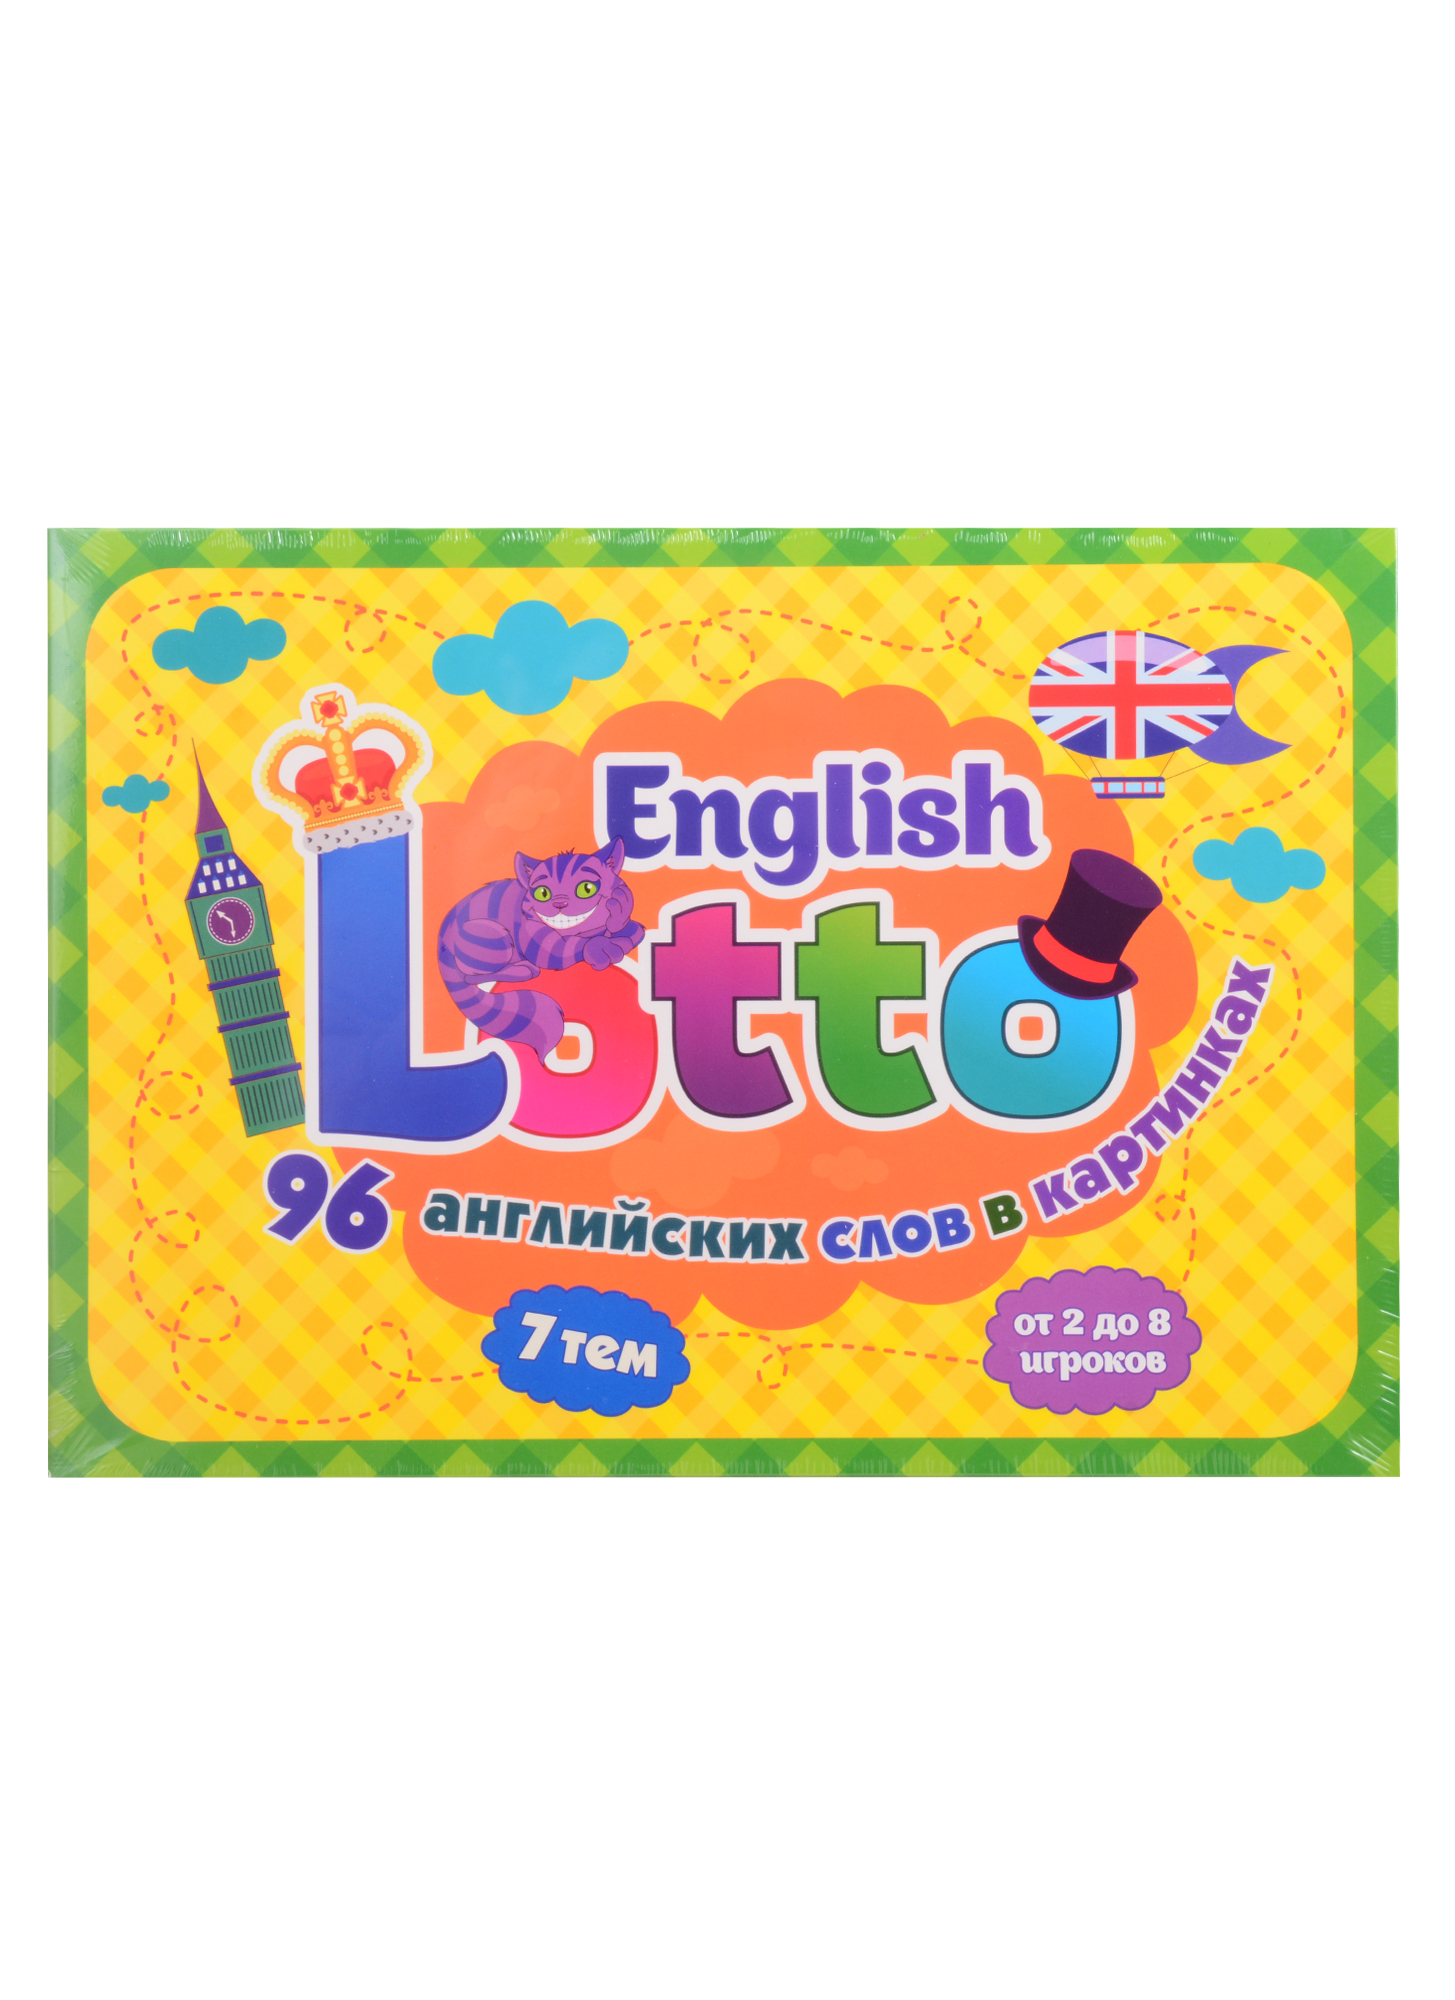 цена English Lotto: 96 английских слов в картинках. 7 тем. от 2 до 8 игроков